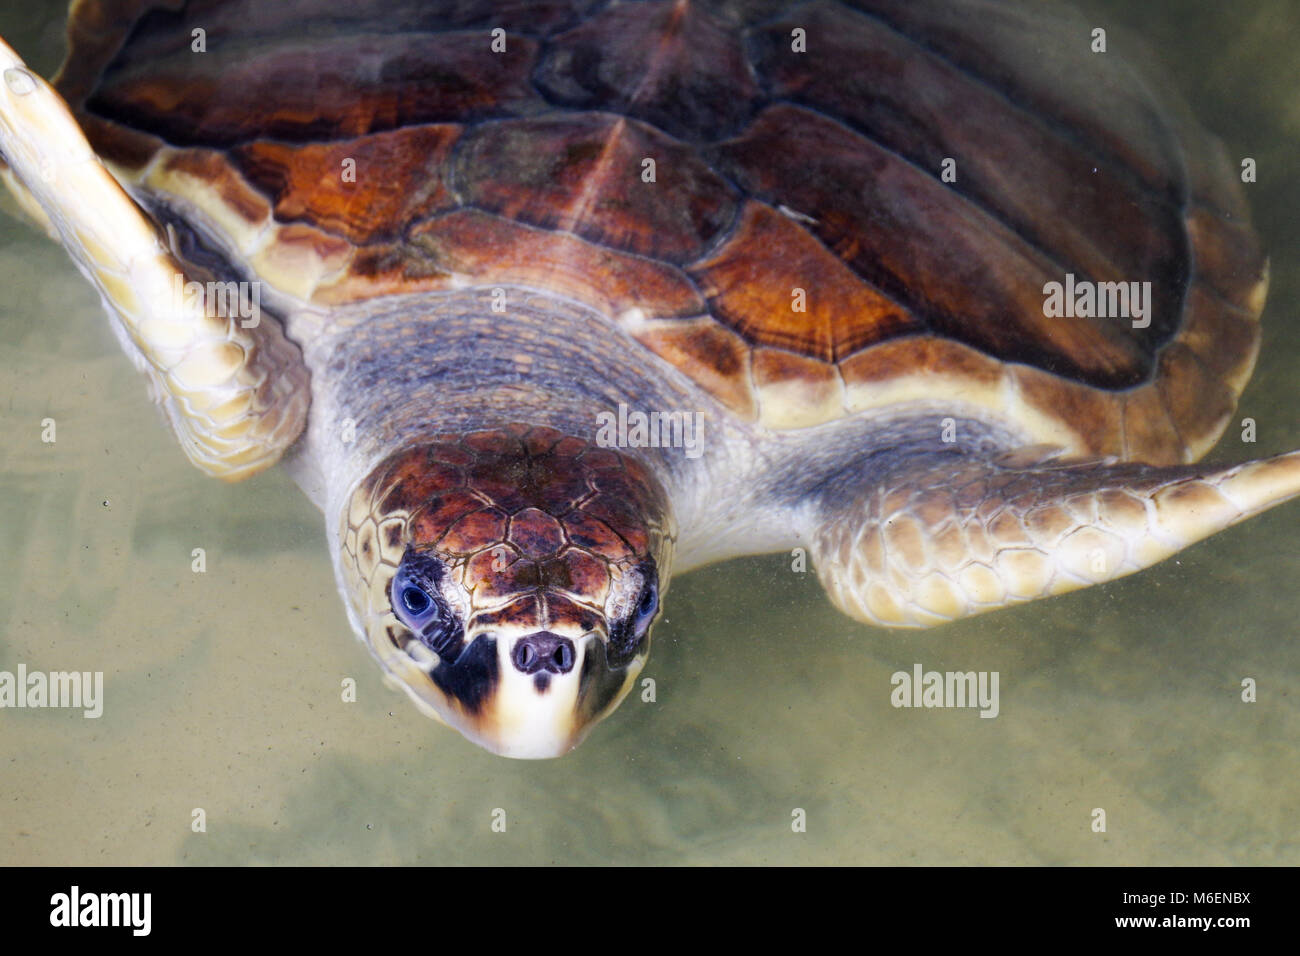 Tortugas marinas verdes en aguas poco profundas en la isla de Sri Lanka, mirando directamente a la cámara con ojos increíblemente azul y mirada inteligente Foto de stock